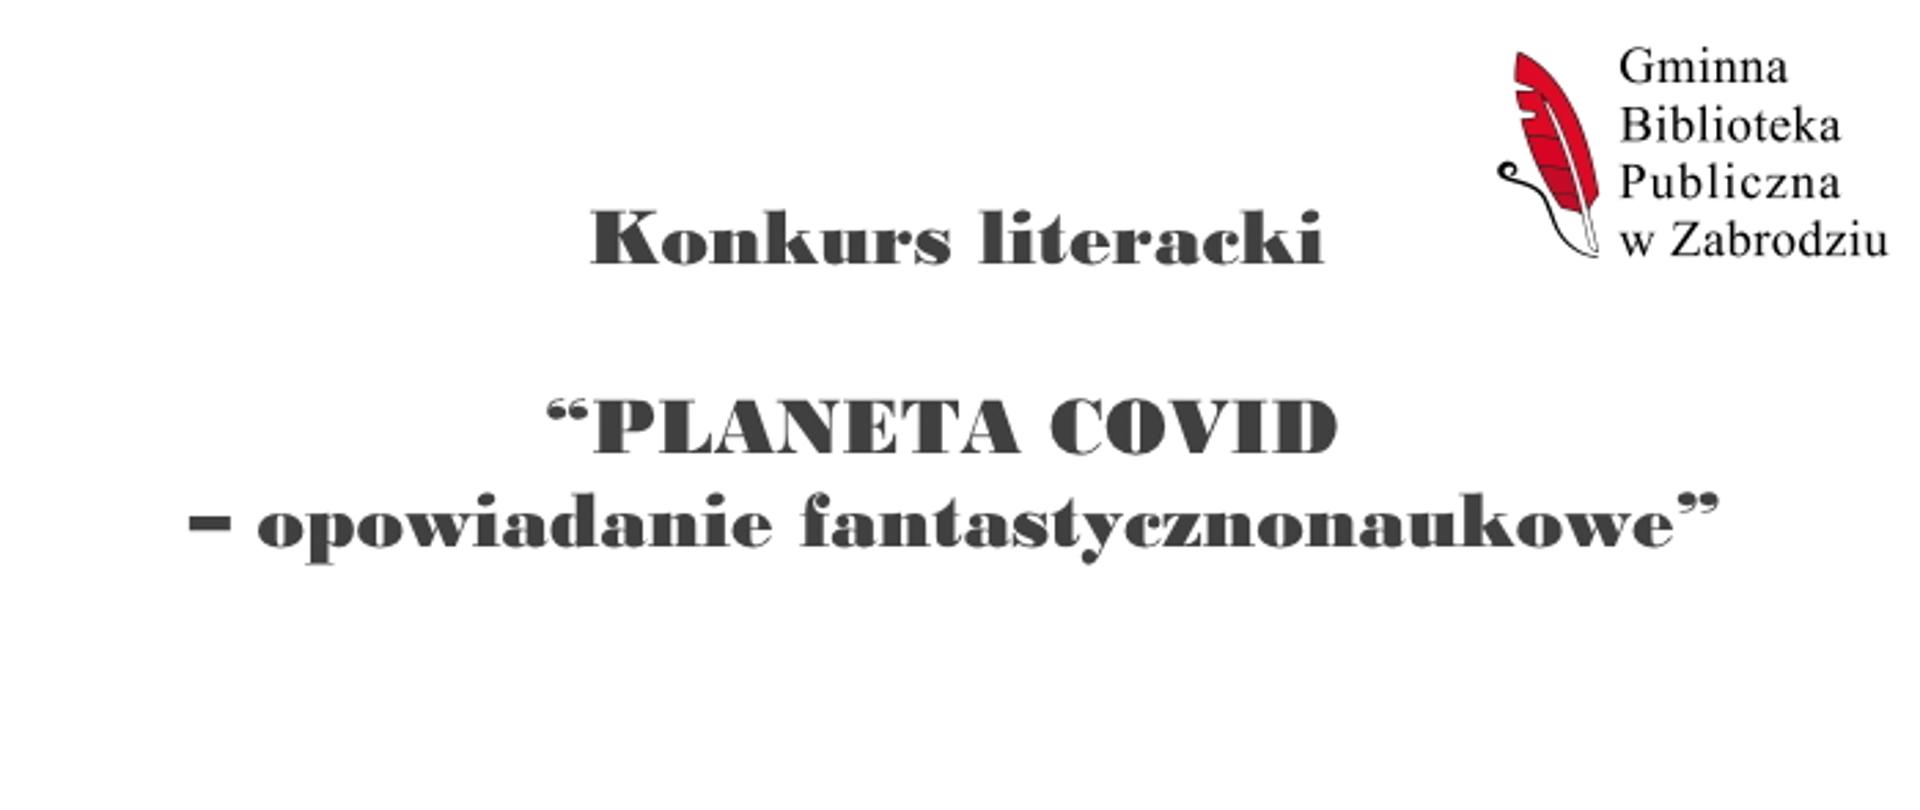 Konkurs literacki Planeta COVID - opowiadanie fantastycznonaukowe